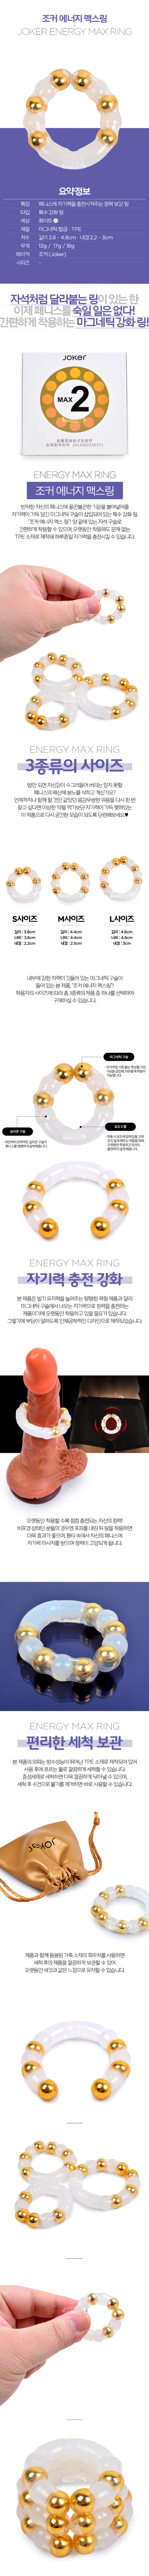 [정력 증가] 조커 에너지 맥스링(Joker Energy MAX Ring)